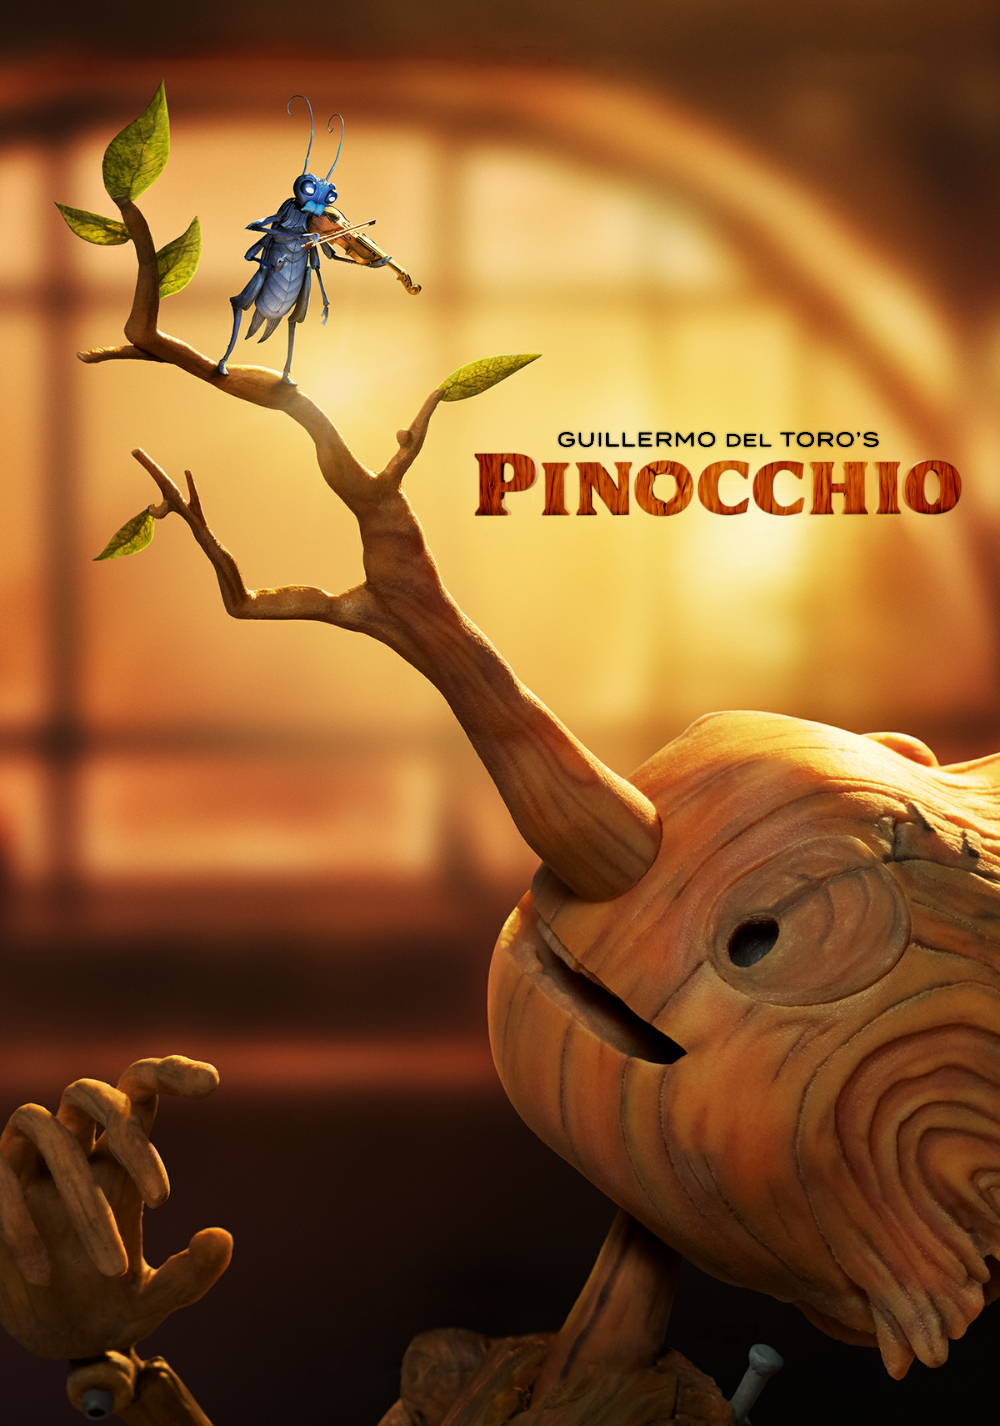 Guillermo del Toro's Pinocchio screenshot